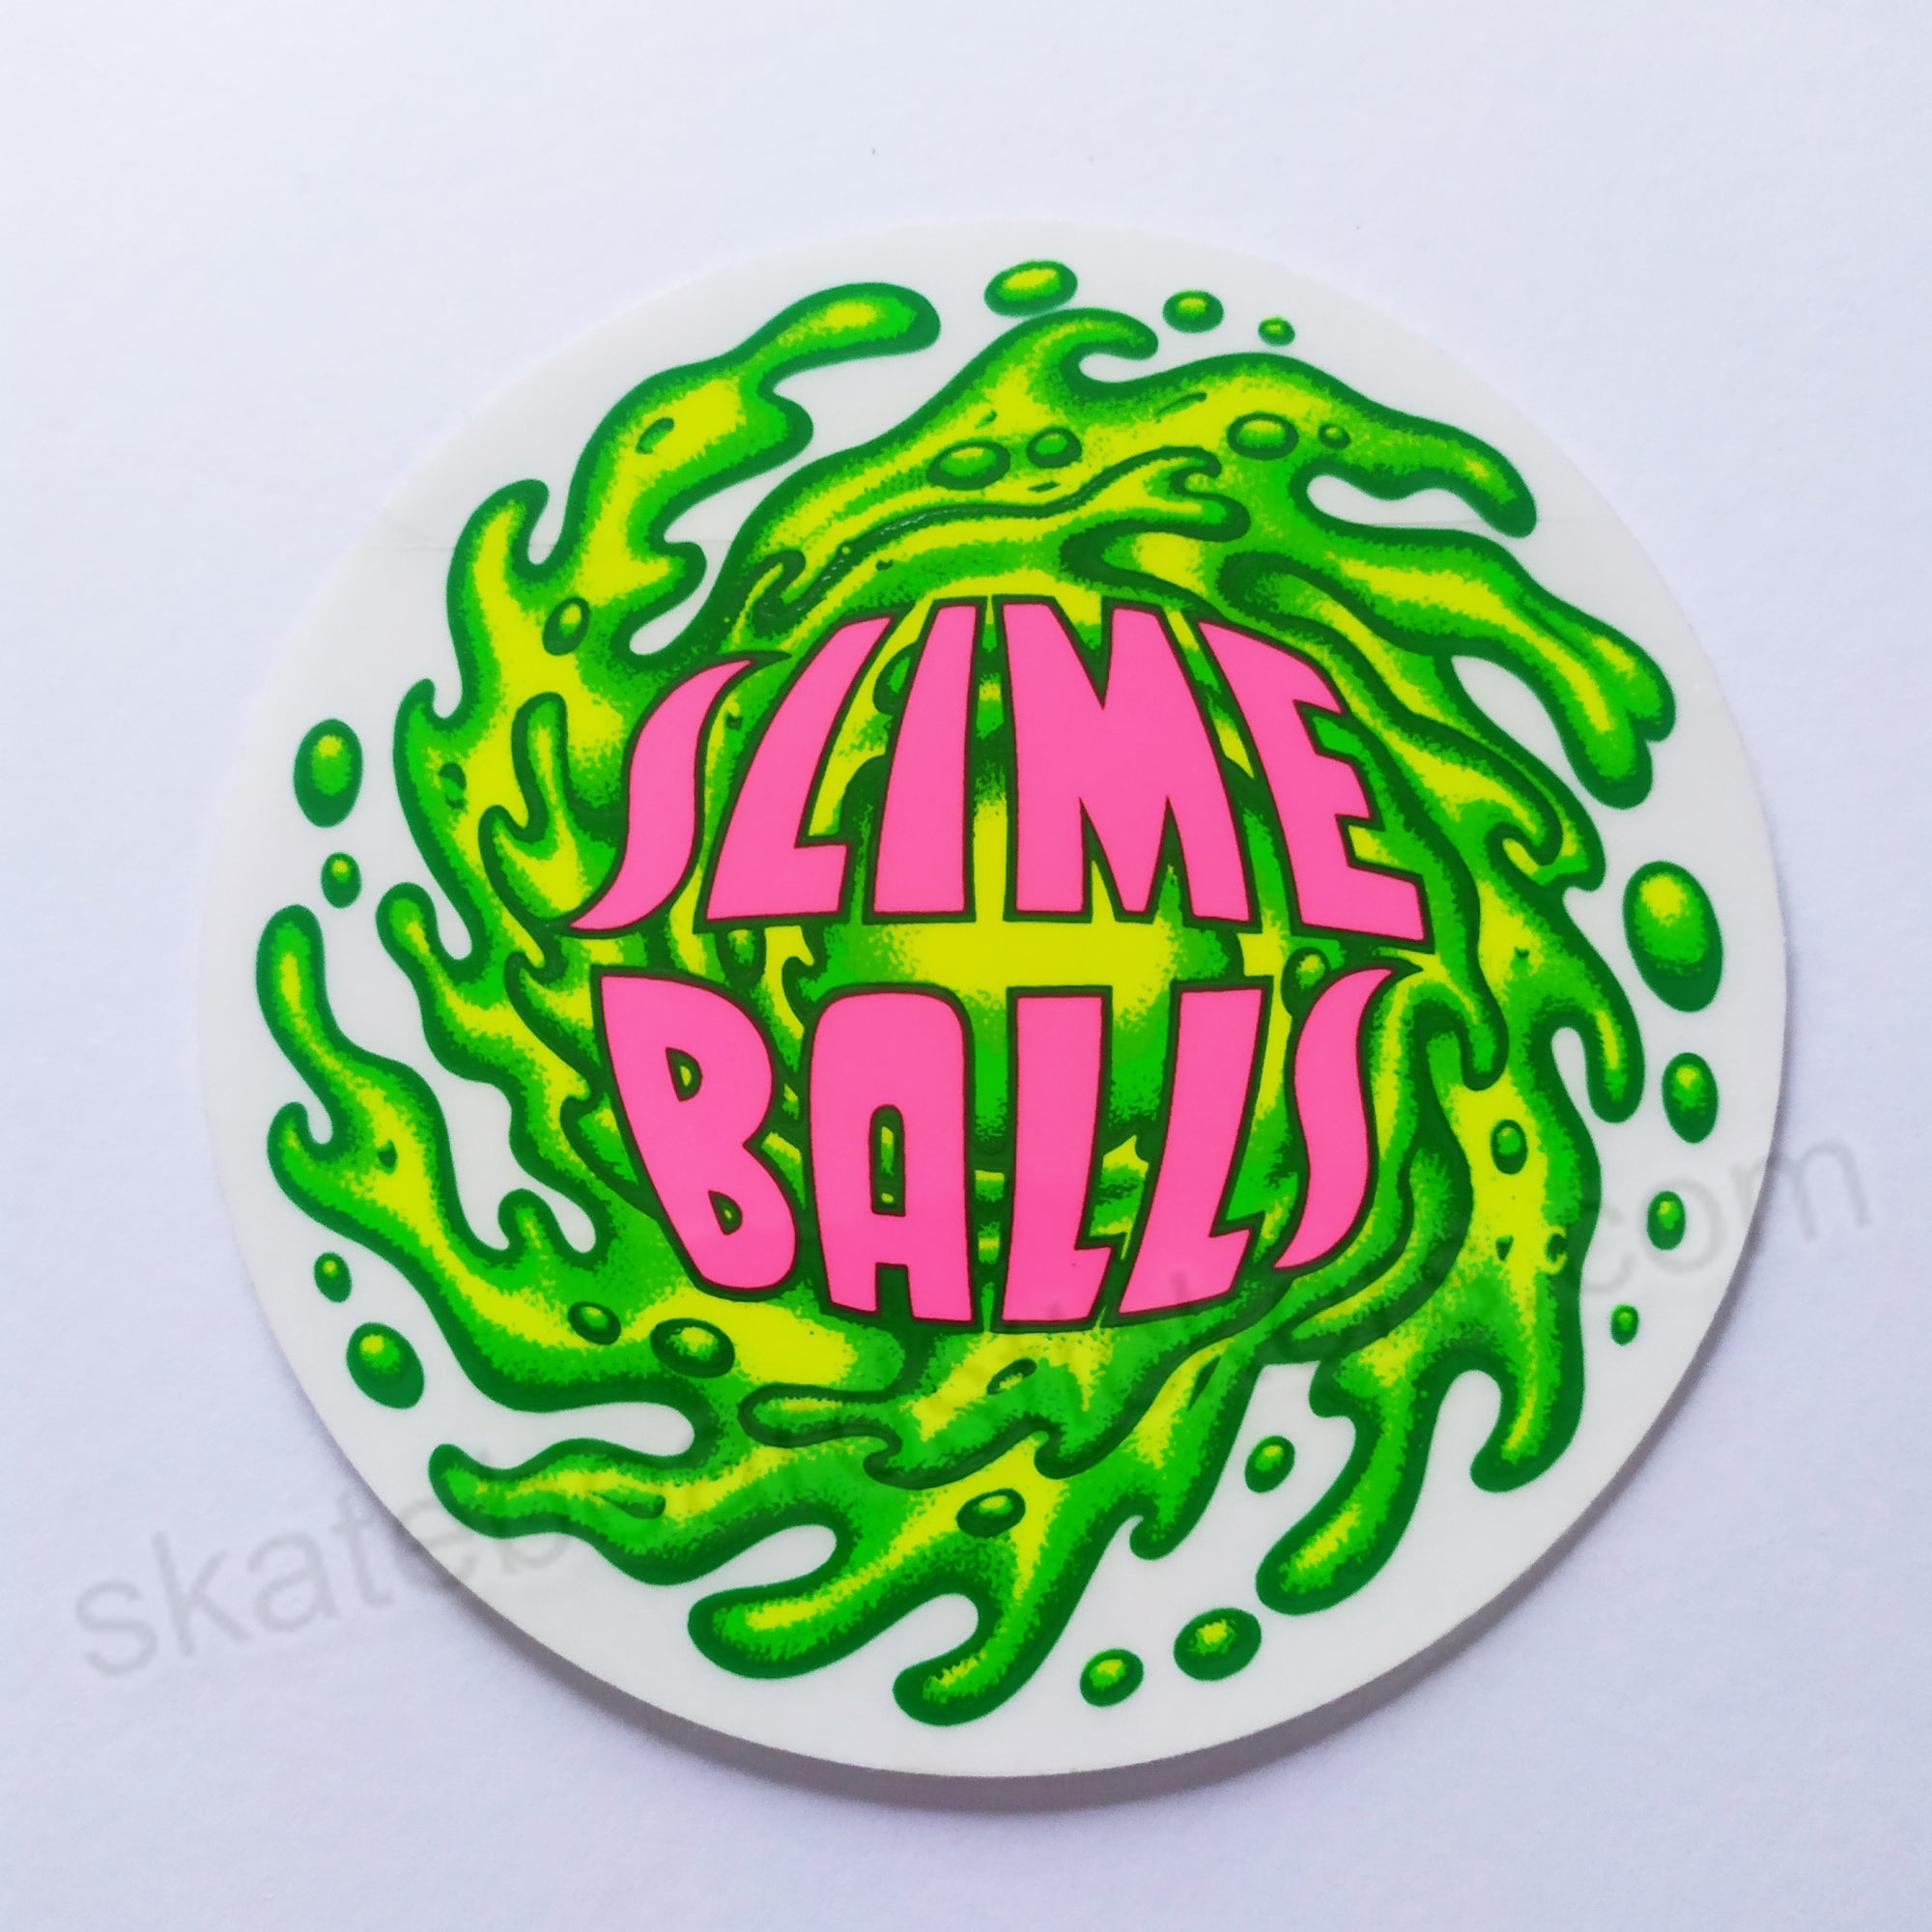 Santa Cruz - Slime Balls Skateboard Sticker - SkateboardStickers.com